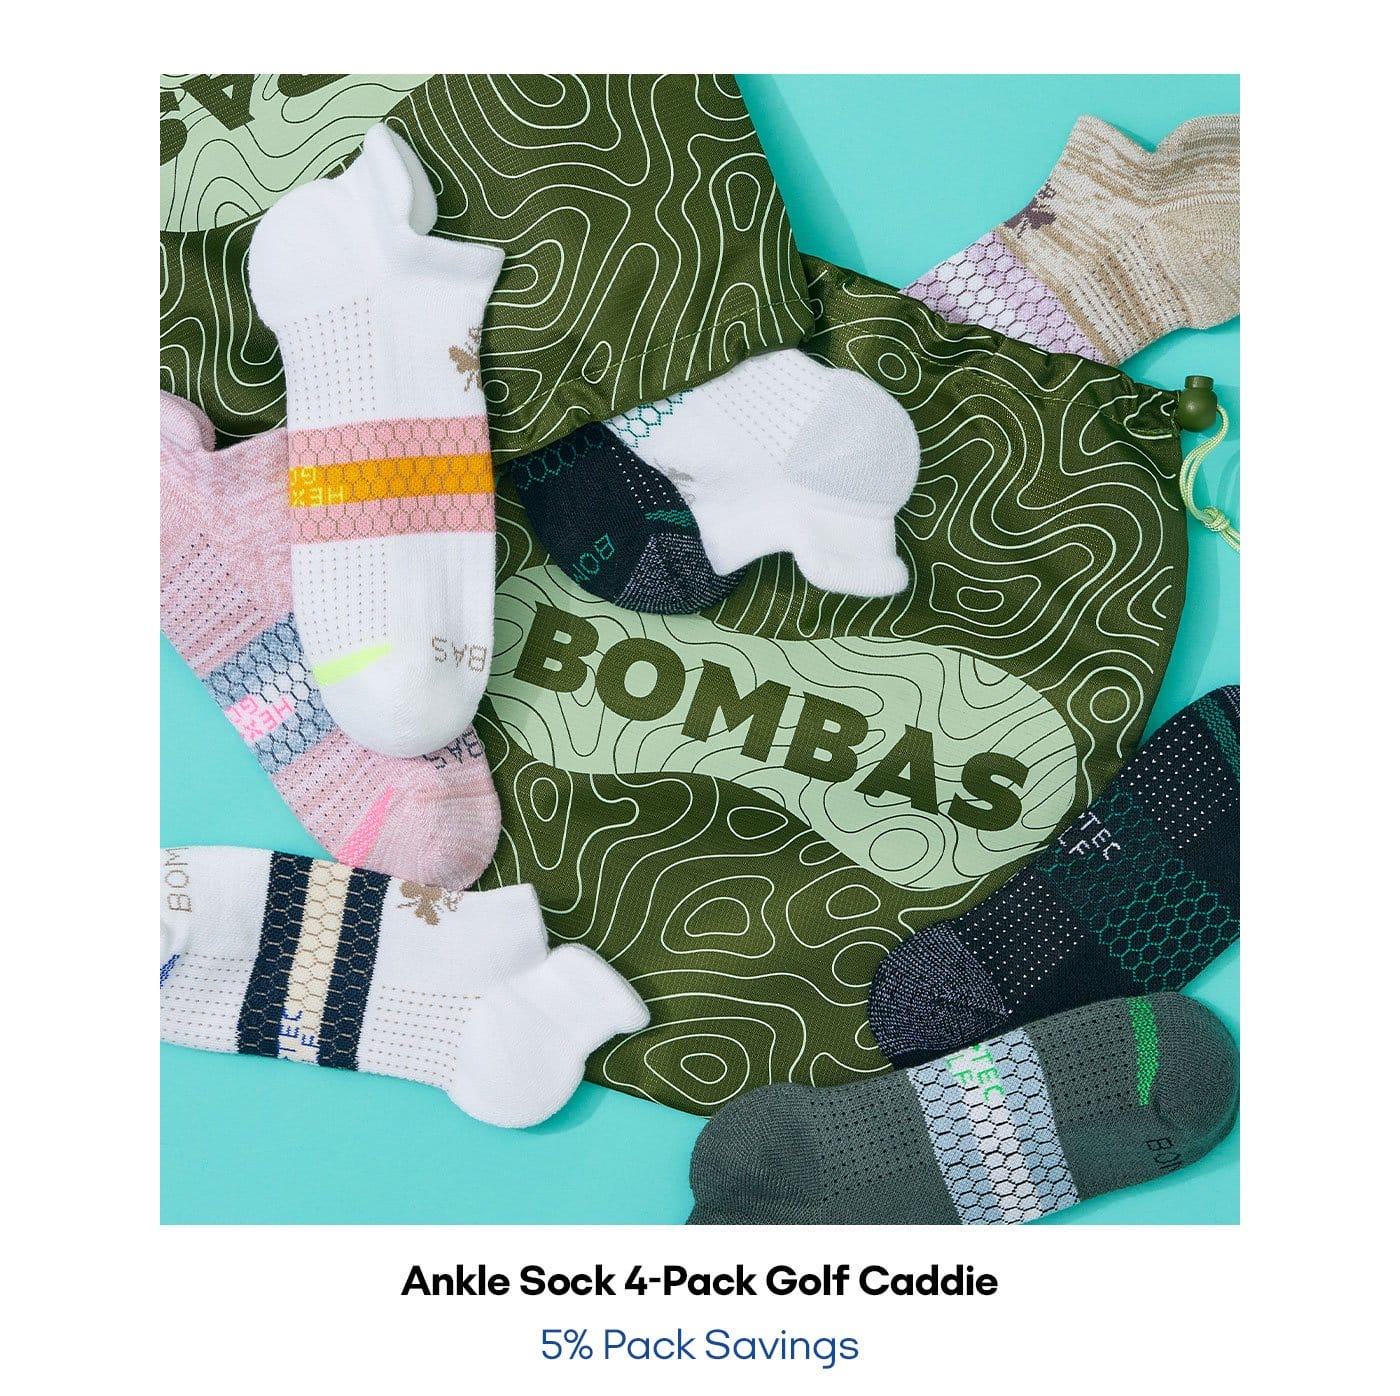 Ankle sock 4-pack Golf Caddie 5% Pack Savings